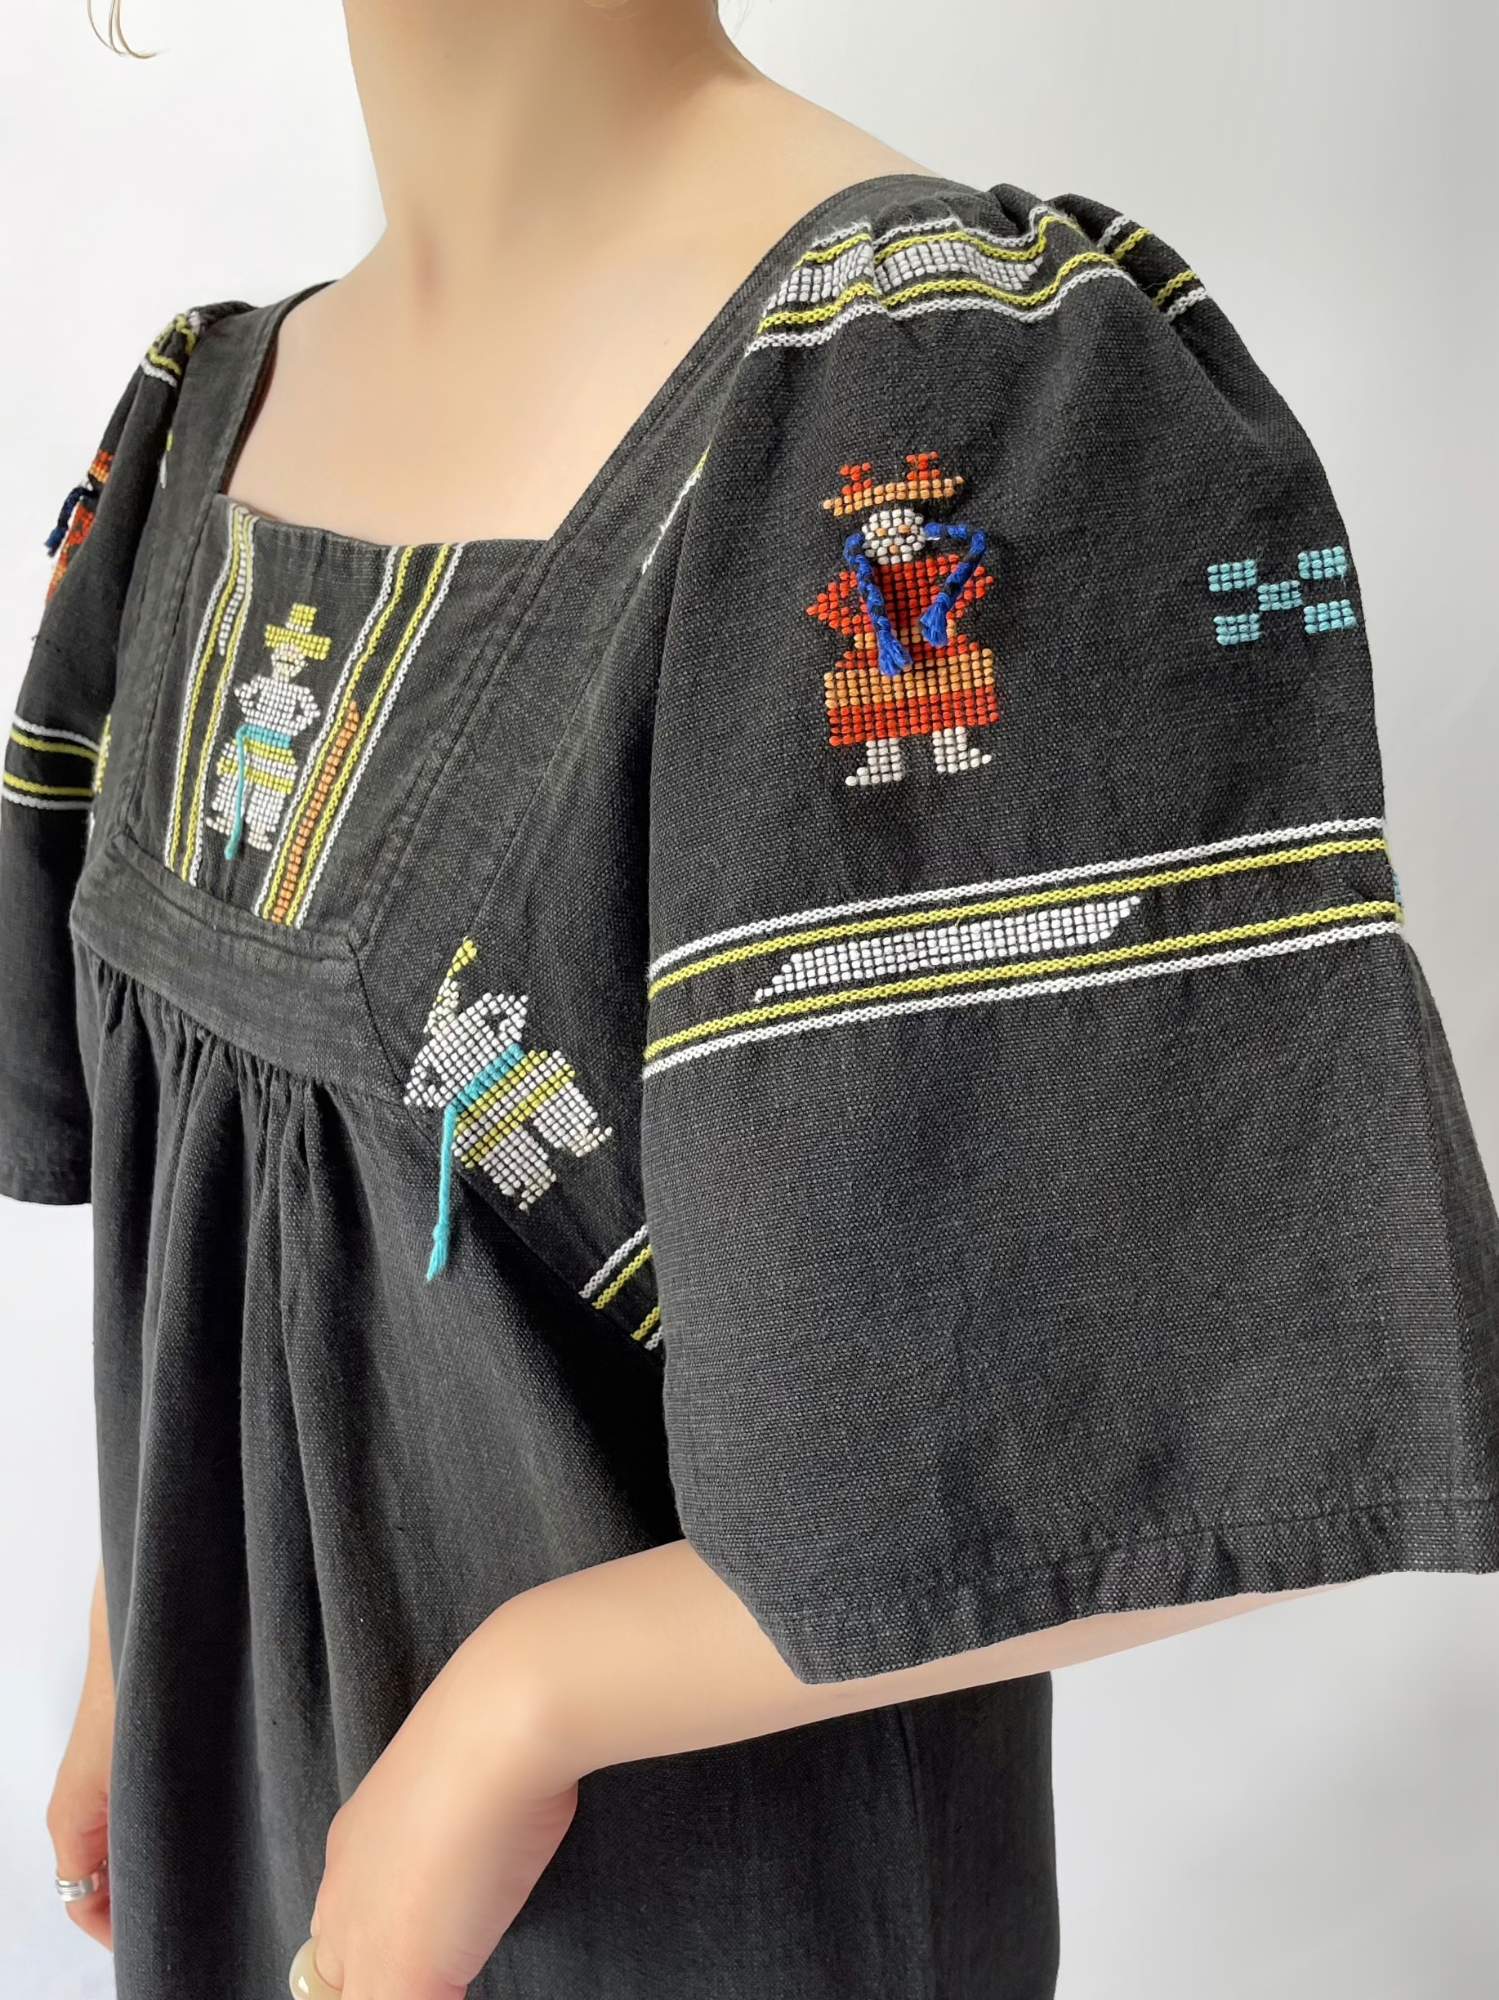 vintage メキシコ 刺繍 民族衣装 ウィピル ポンチョ 通販 www